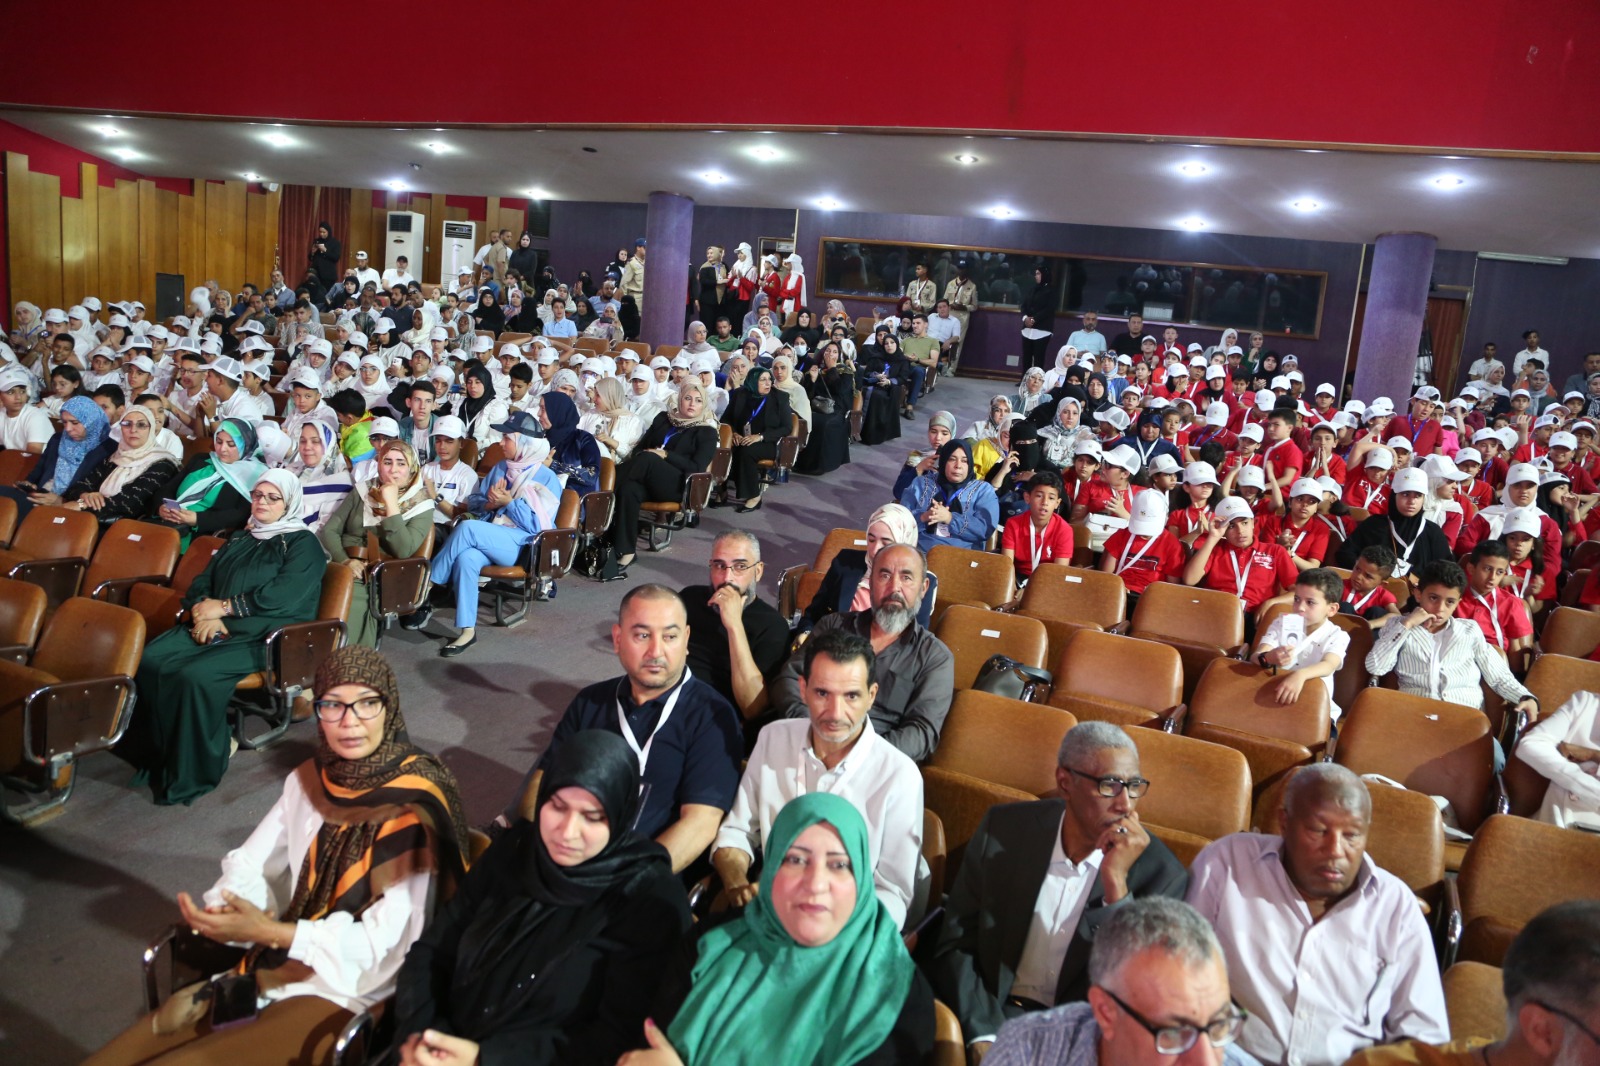 الاعلان بمسرح كلية العلوم بجامعة طرابلس عن  نتائج بطولة العاصمة الاولى للحساب الذهني  .